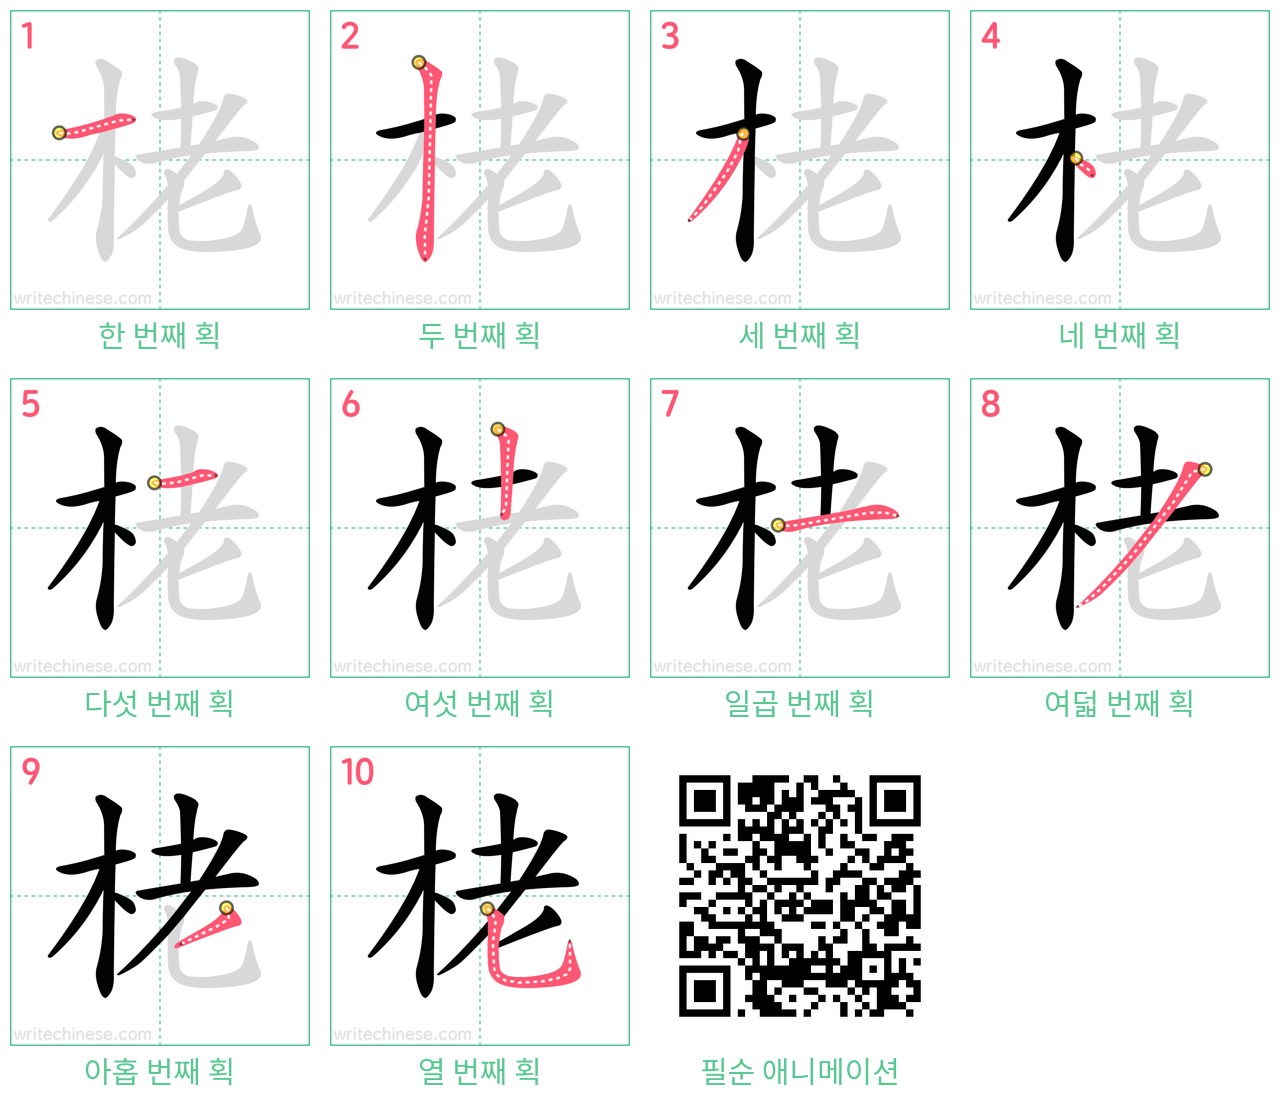 栳 step-by-step stroke order diagrams